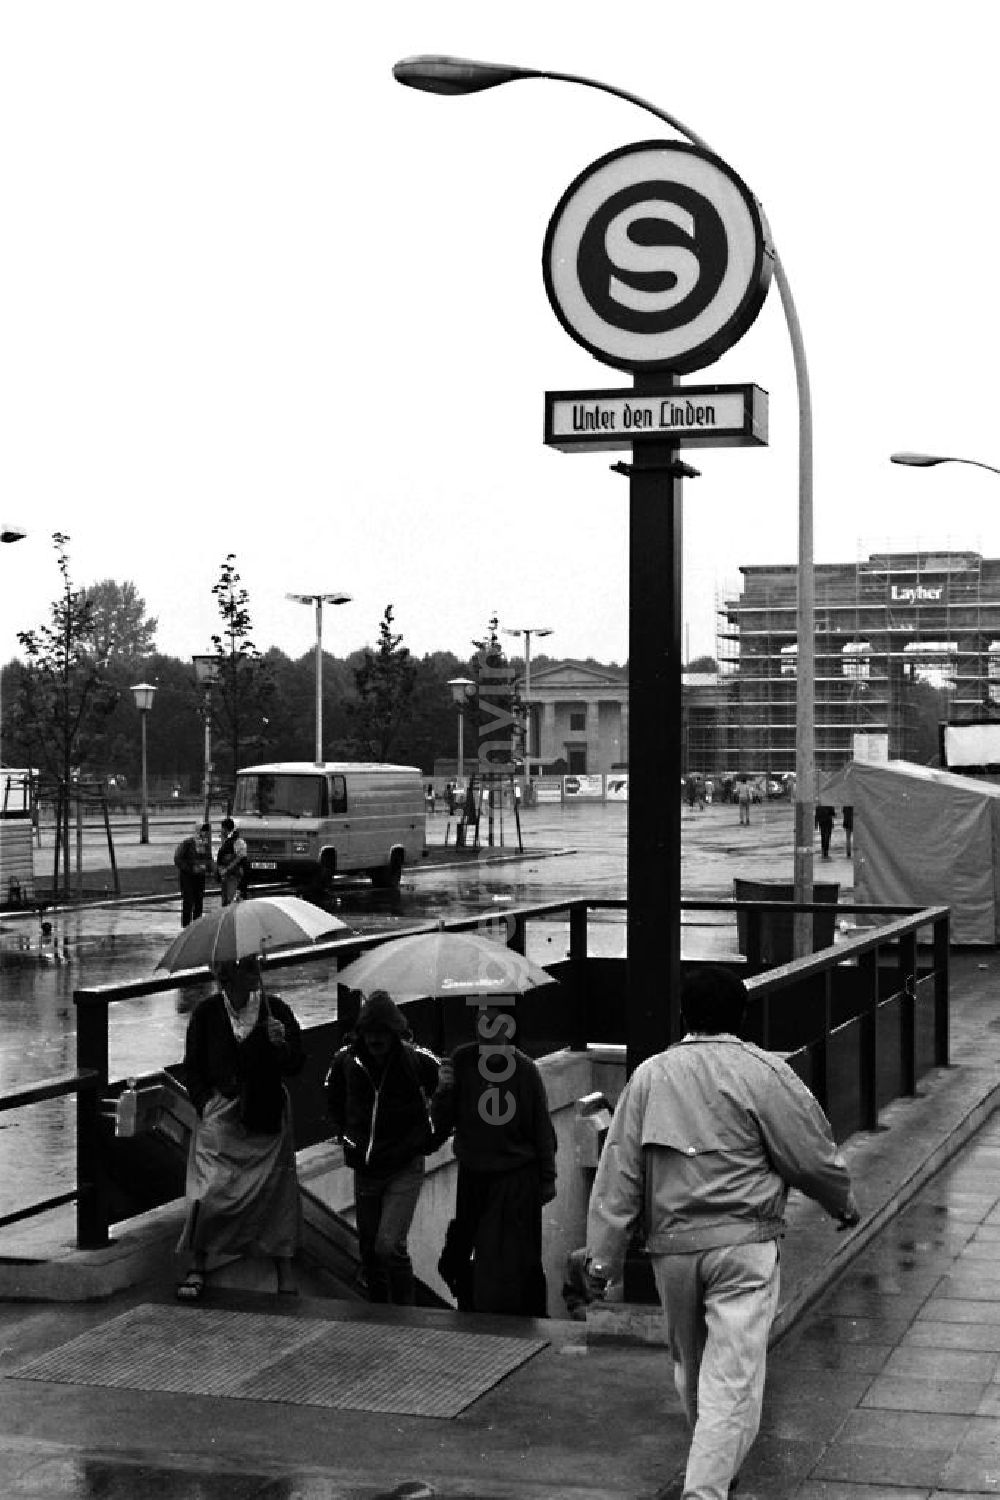 GDR photo archive: Berlin-Mitte - Eingang zum S-Bahnhof Unter den Linden am Pariser Platz, im Hintergrund das Brandenburger Tor mit Gerüst.